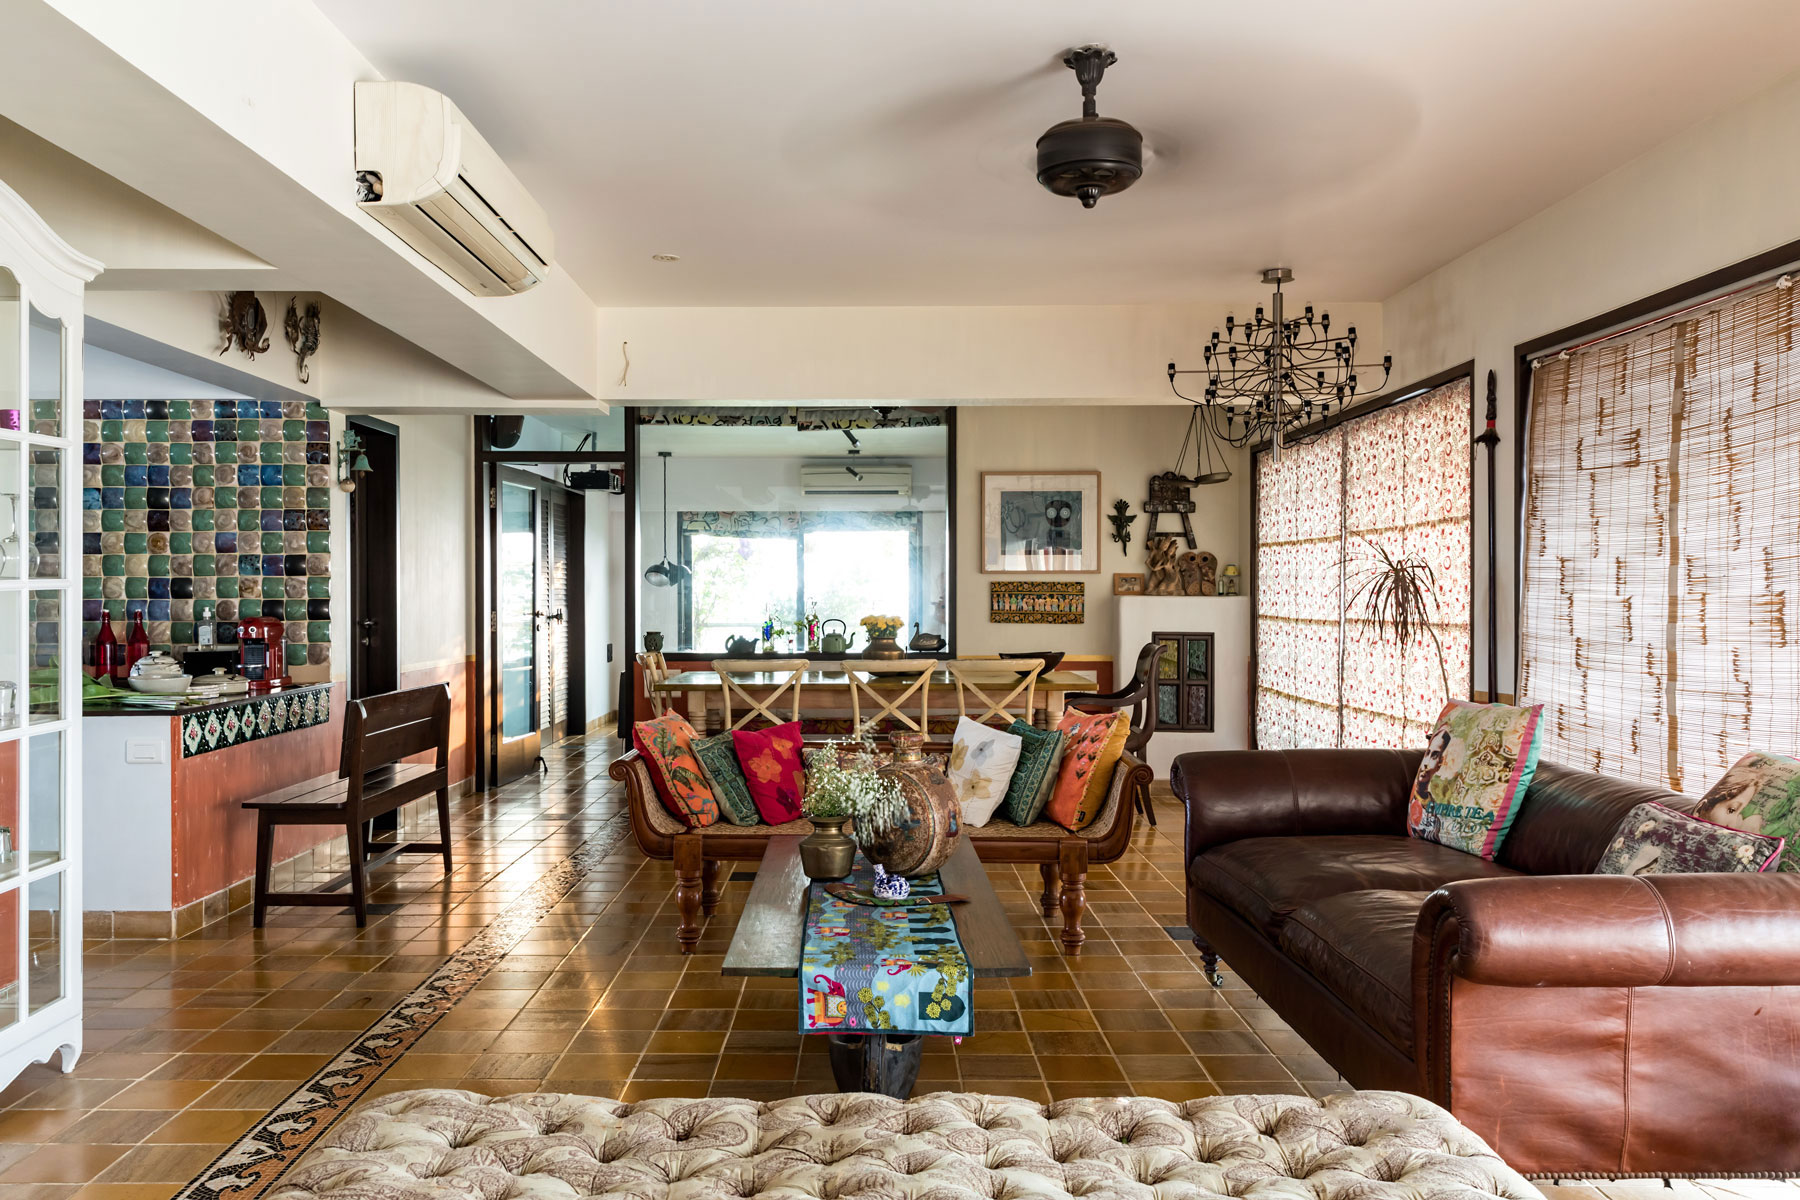 Rajesh Krishnan's Mumbai Apartment - Beautiful Homes